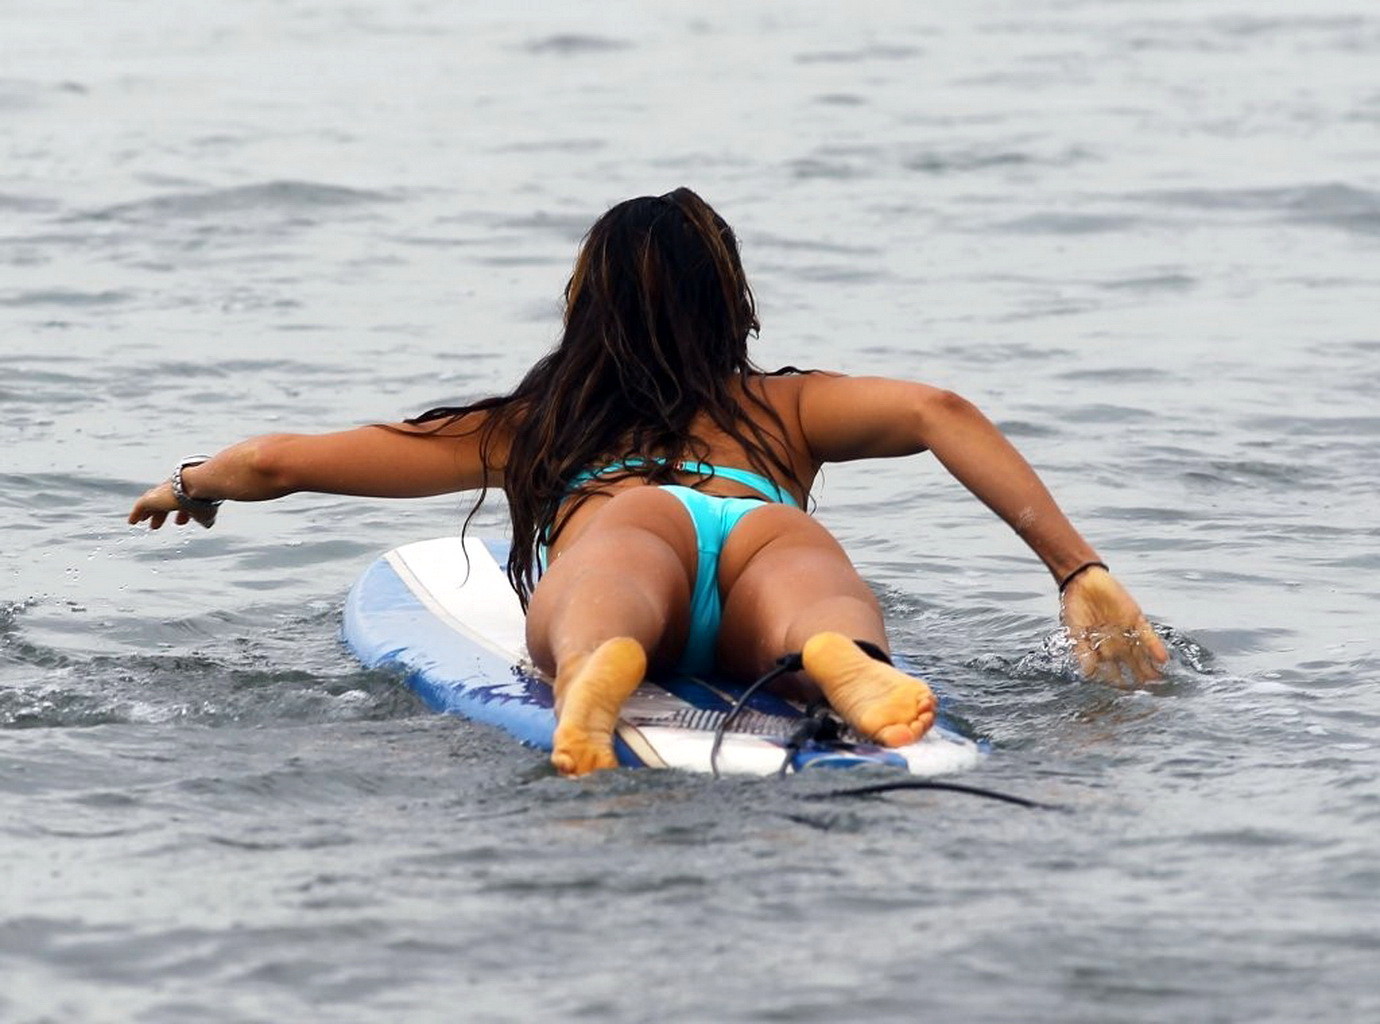 Leilani dowding dans un bikini sans bretelles bleu ciel en train de surfer sur la plage de venise
 #75224597